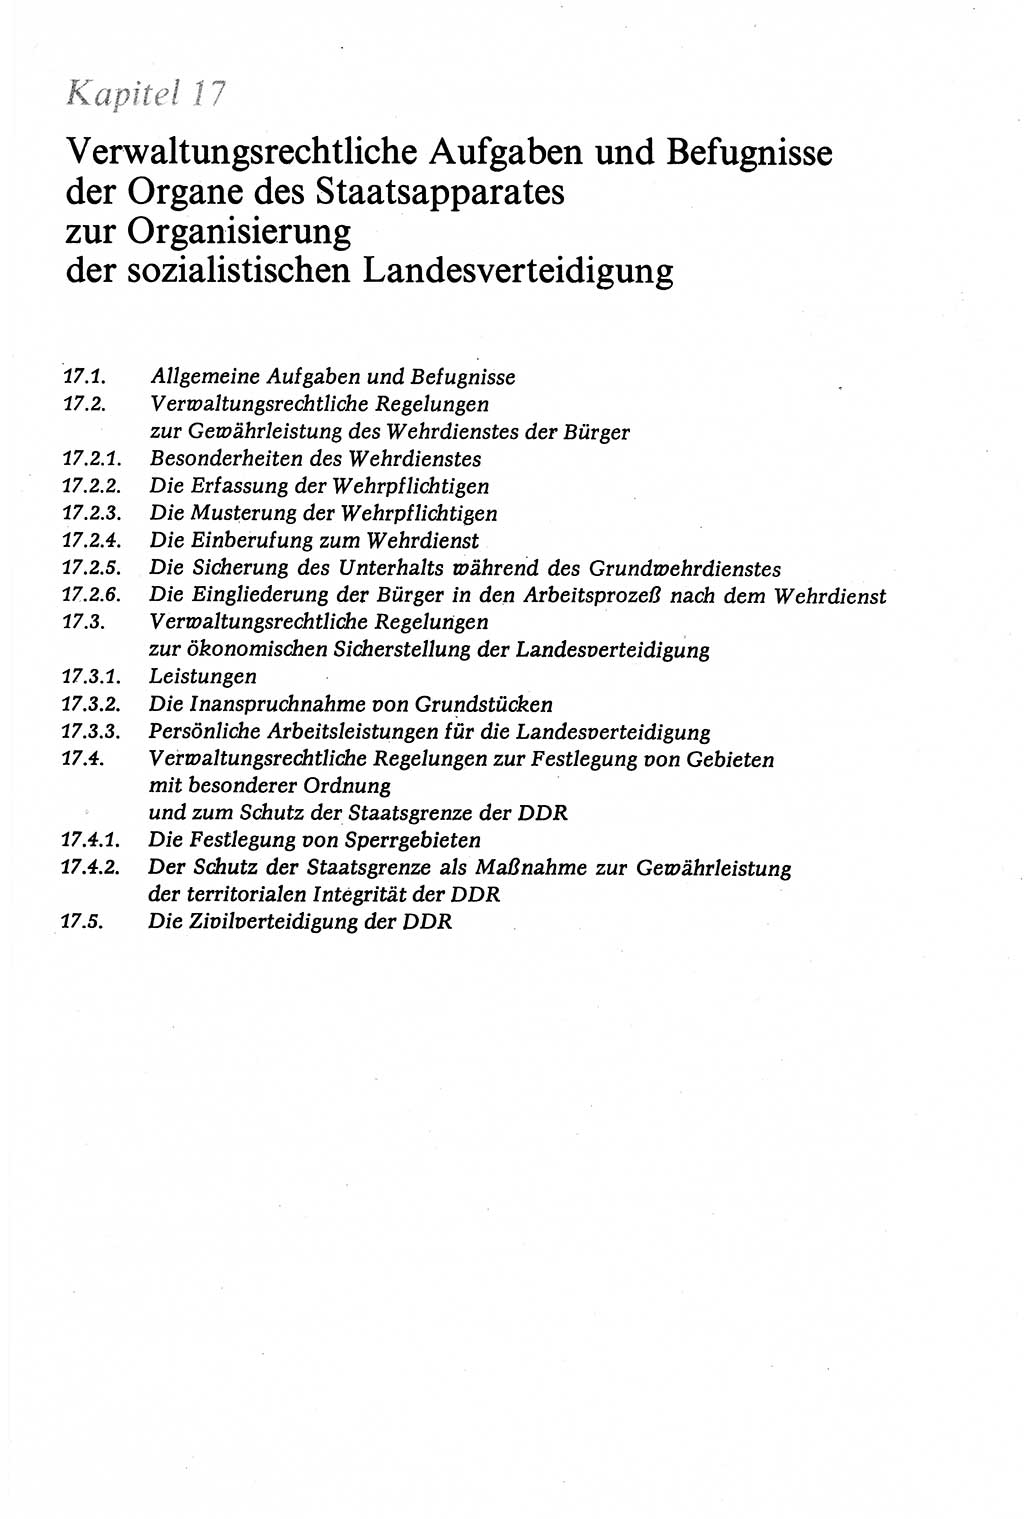 Verwaltungsrecht [Deutsche Demokratische Republik (DDR)], Lehrbuch 1979, Seite 621 (Verw.-R. DDR Lb. 1979, S. 621)